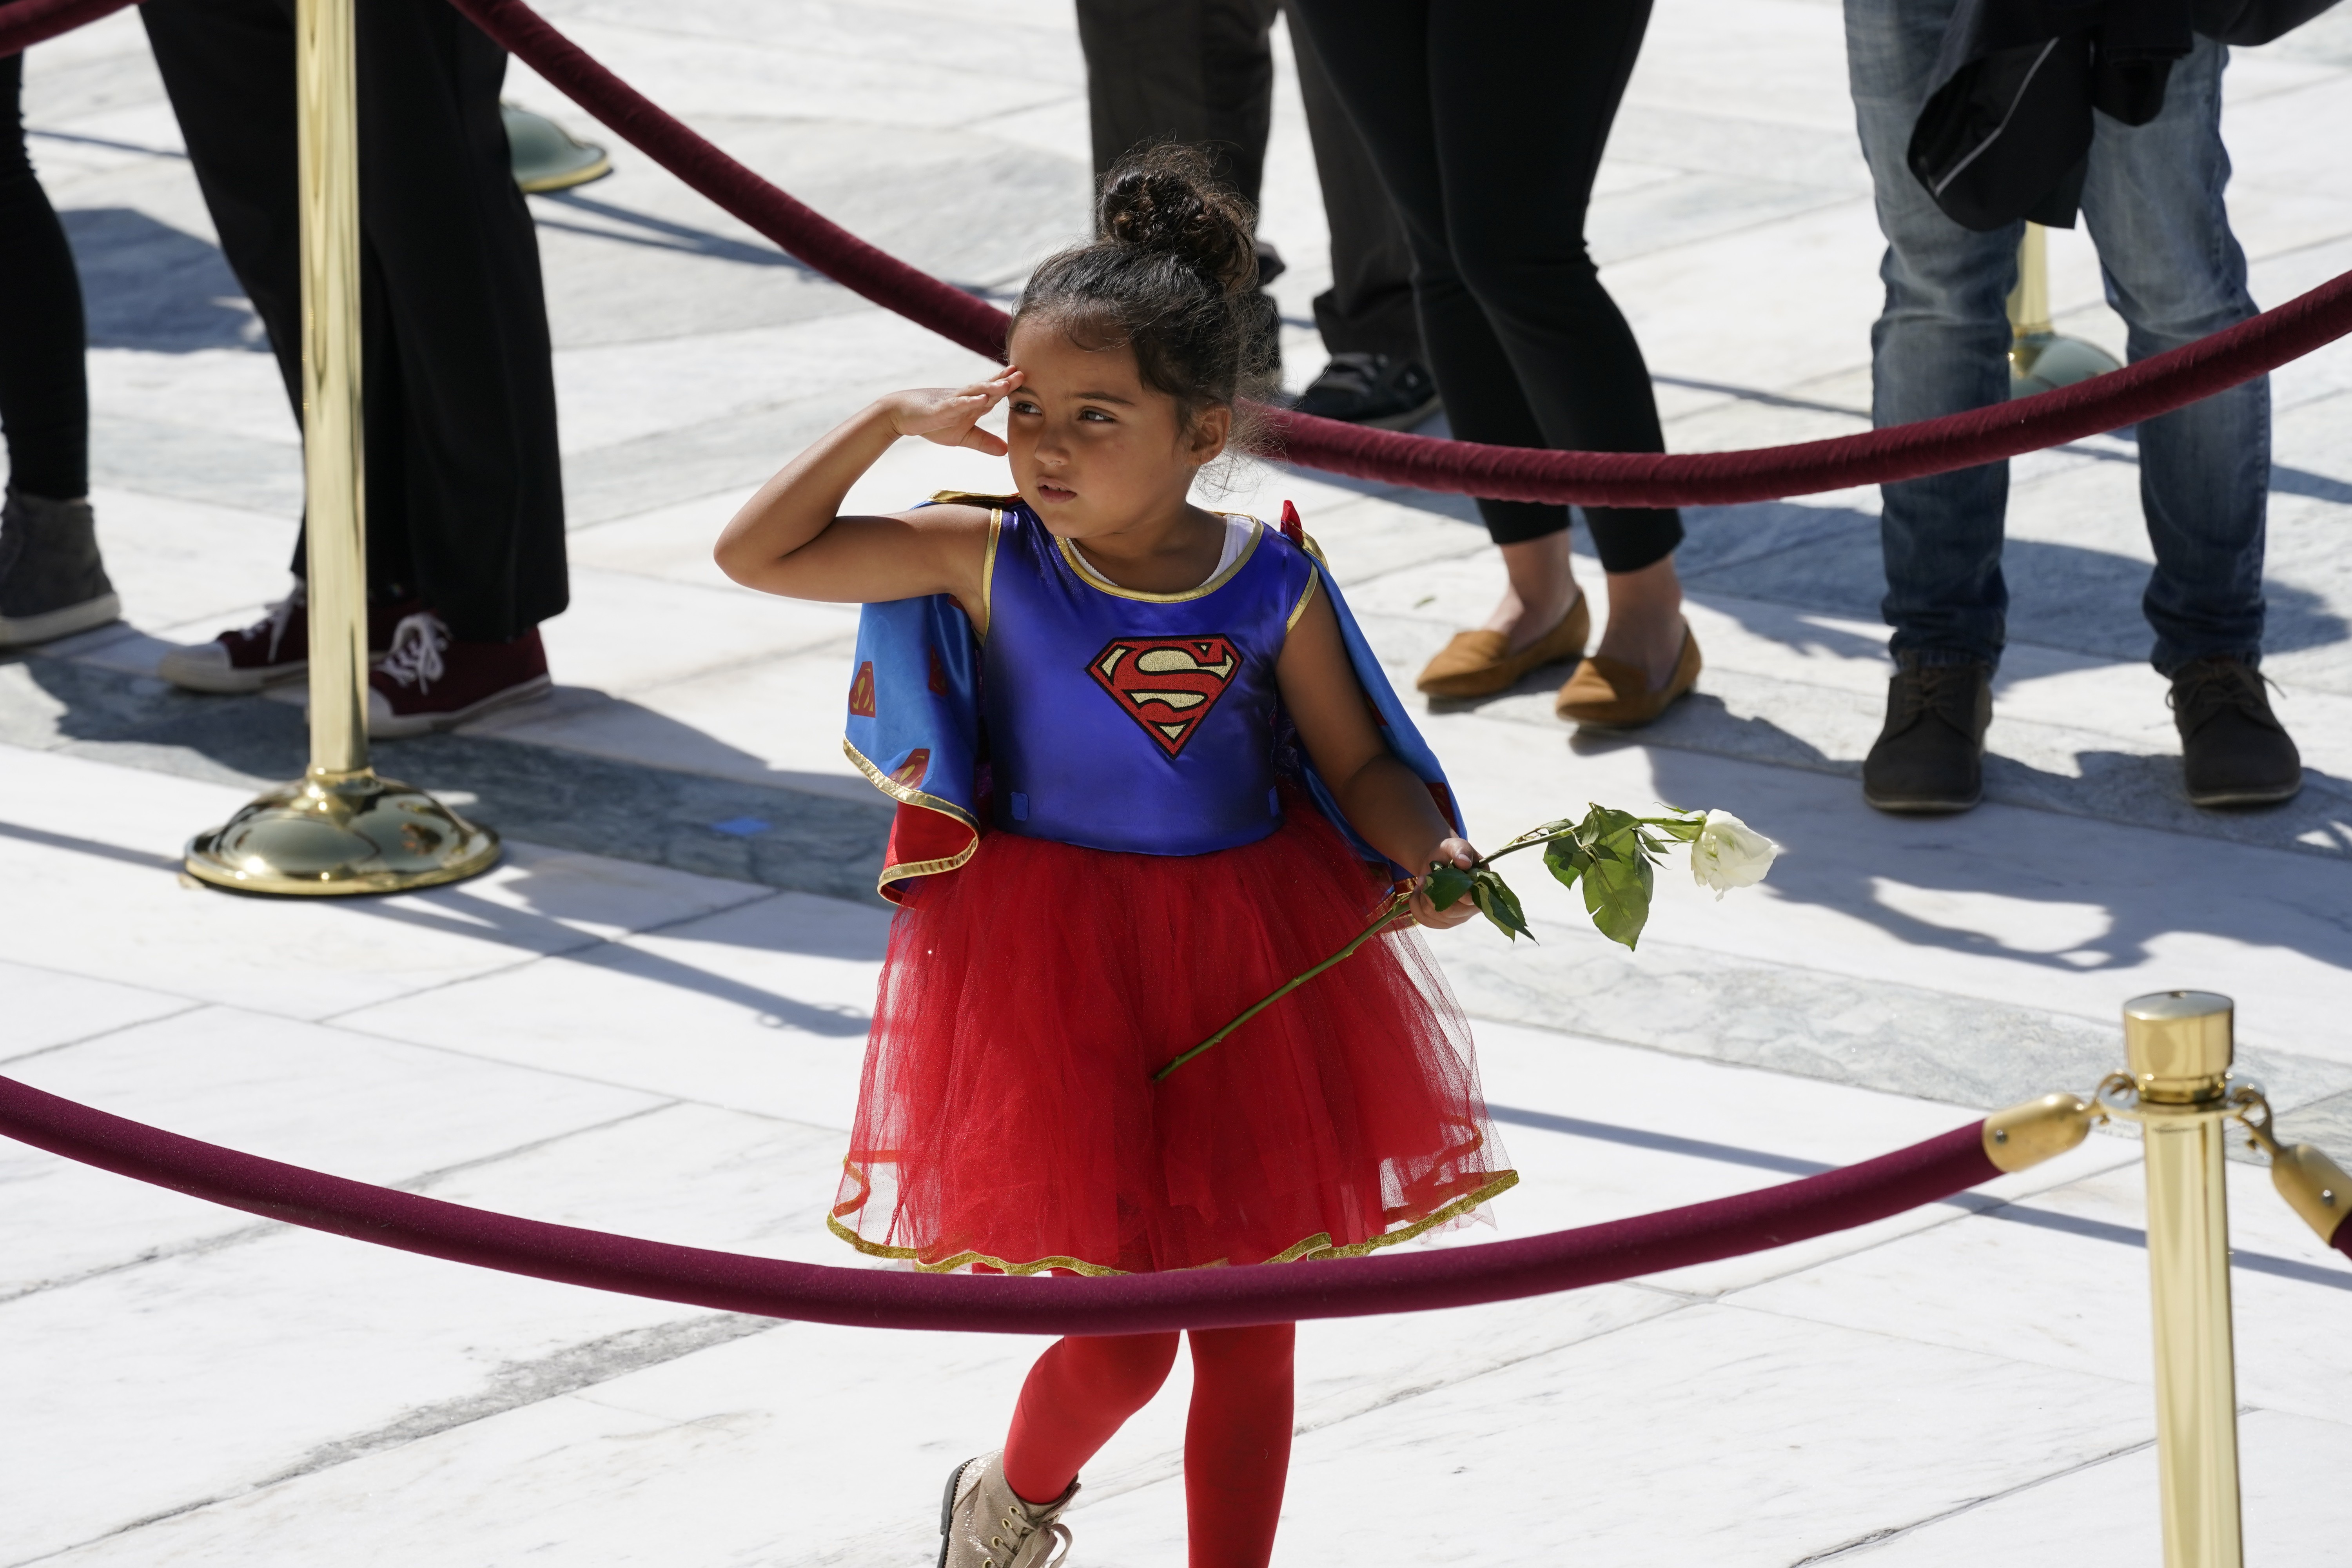 No primeiro dia das homenagens para juíza, menina usa fantasia de Supergirl  (Foto: Alex Brandon-Pool/Getty Images)